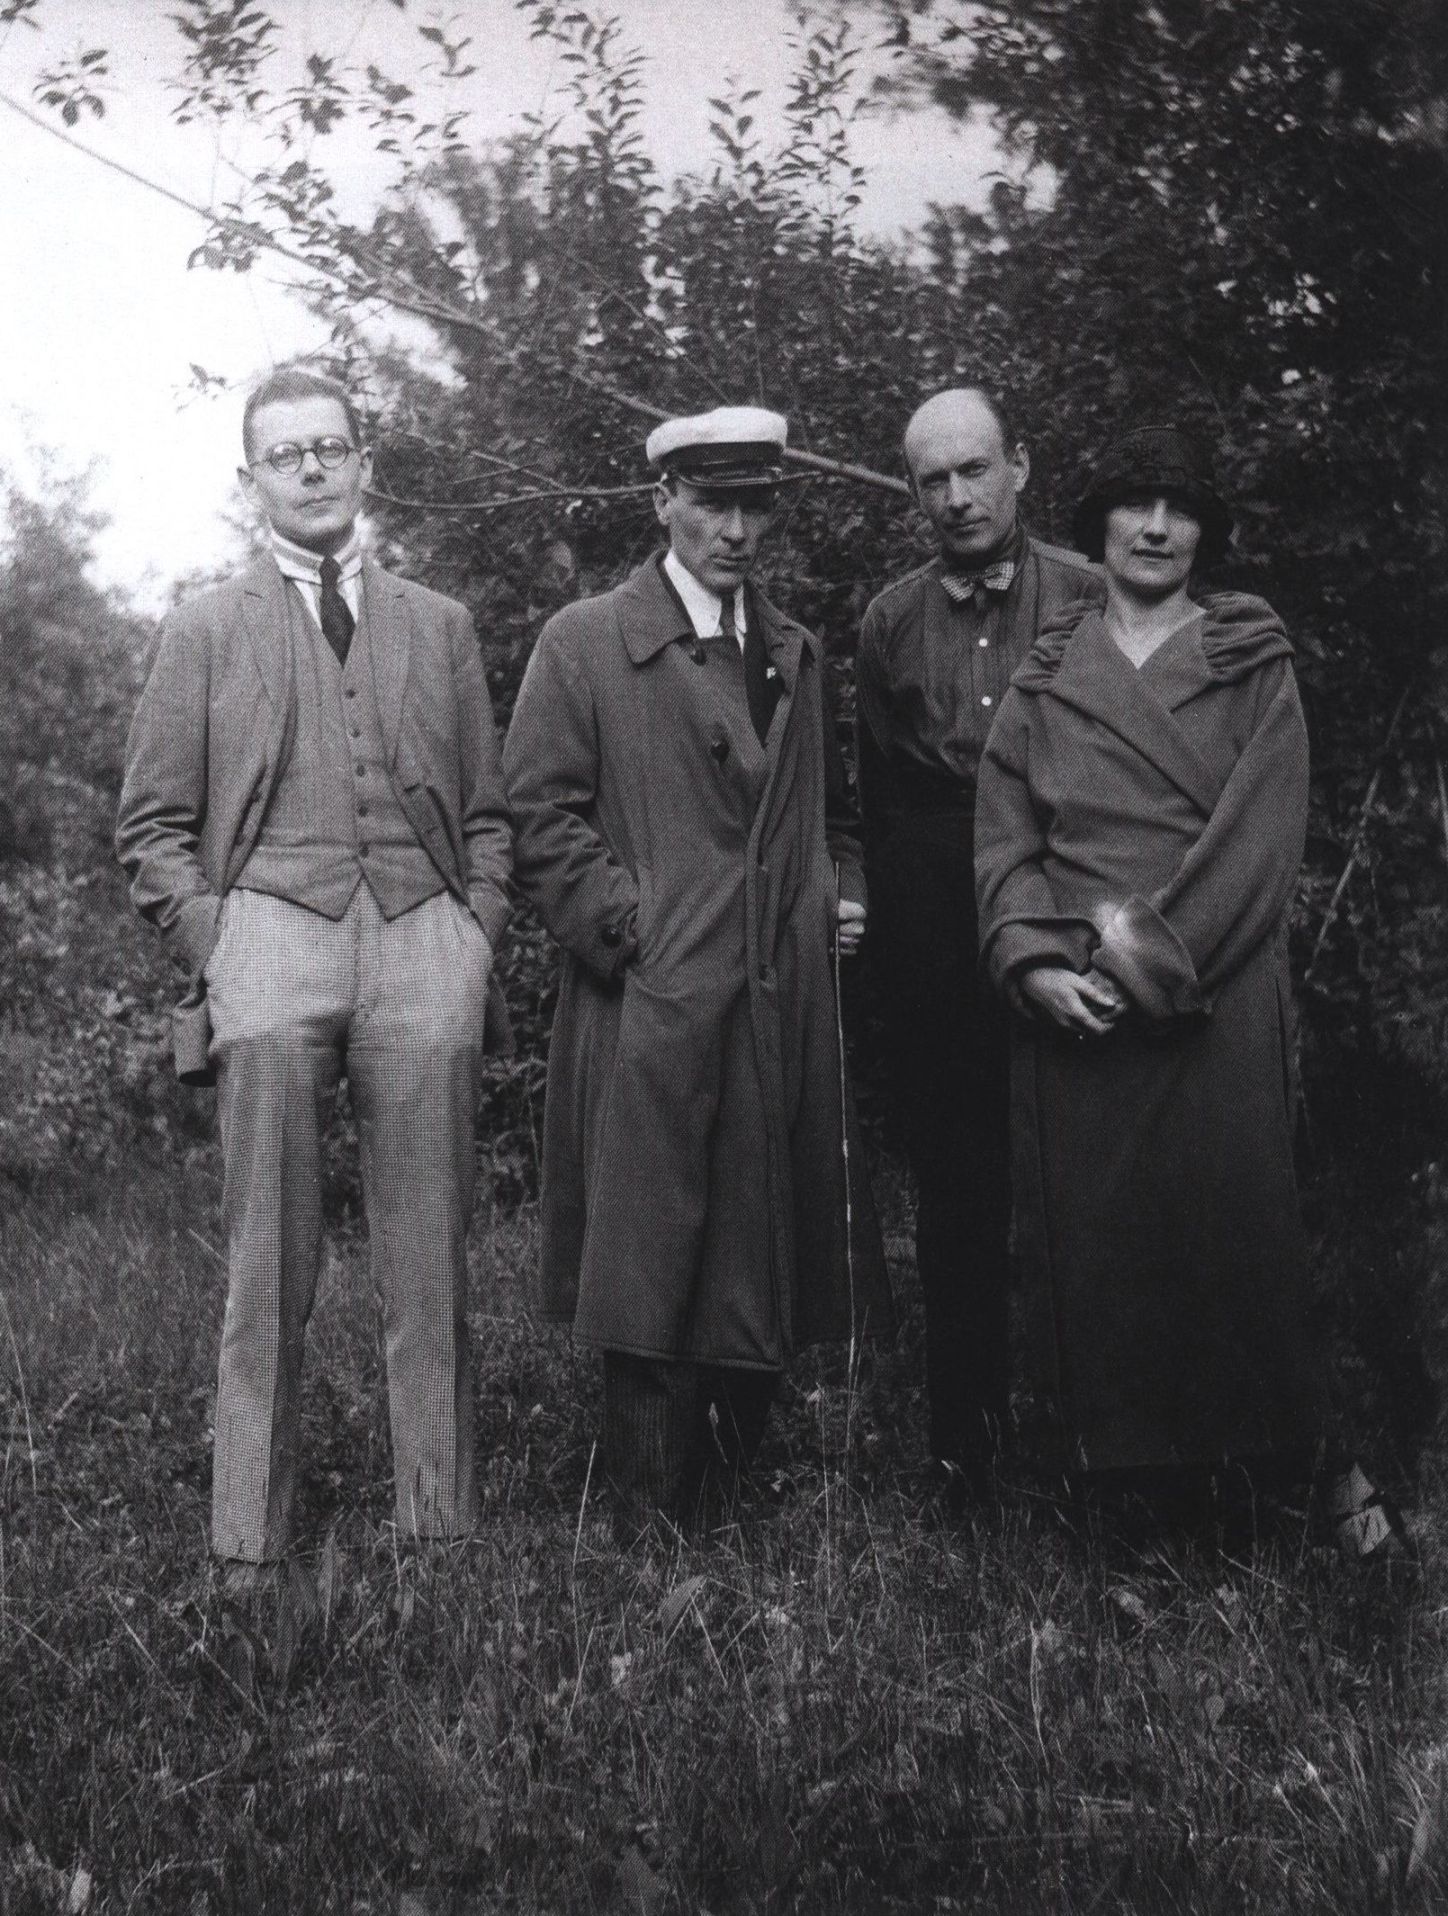 Слева направо: Сергей Топленинов, Михаил Булгаков, Николай Лямин, Любовь Белозерская на прогулке в Останкине, 1926 г.